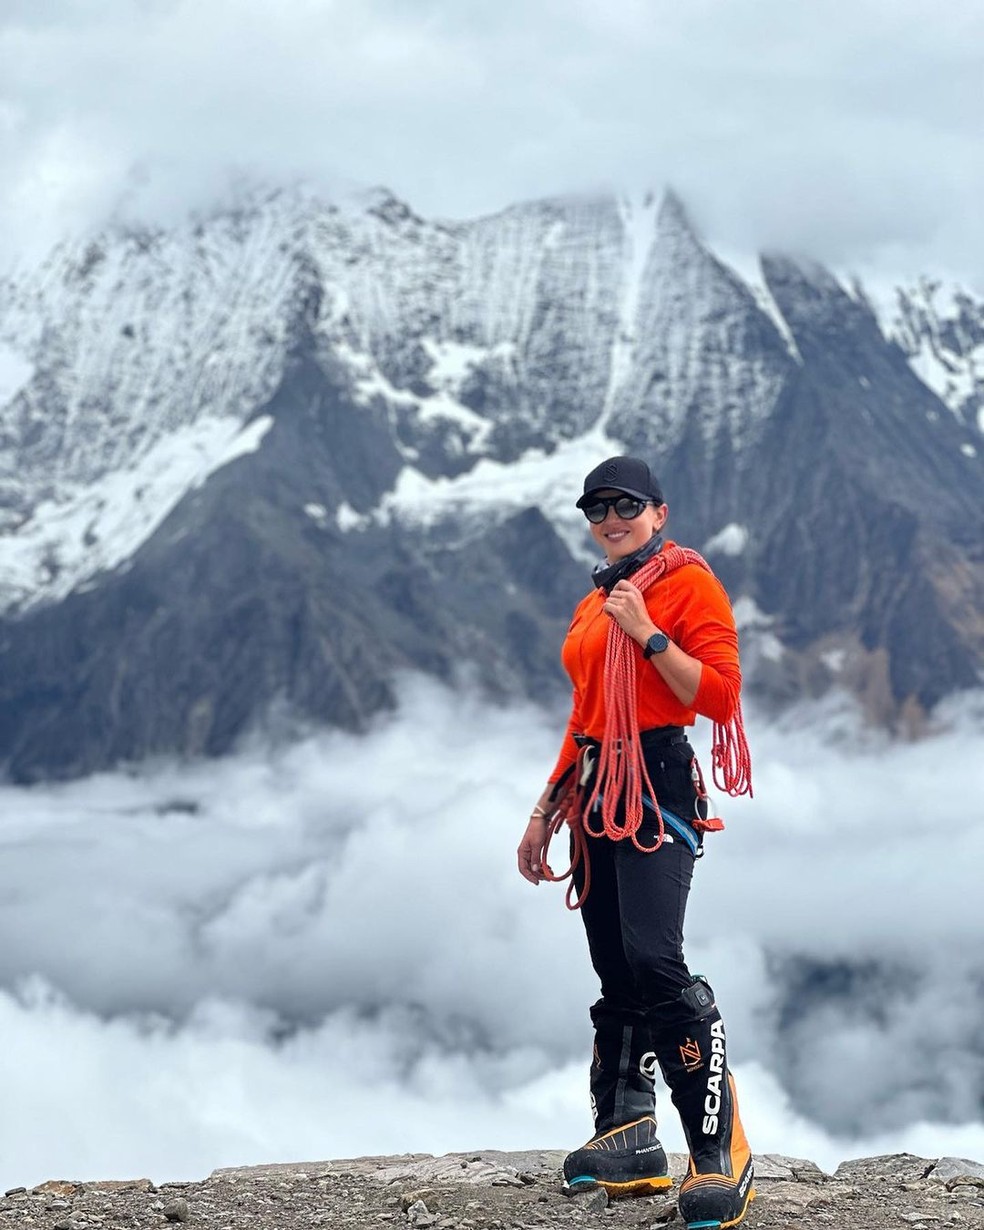 Anna Gutu compartilhava sua vida de alpinista com seus 30 mil seguidores no Instagram — Foto: Reprodução